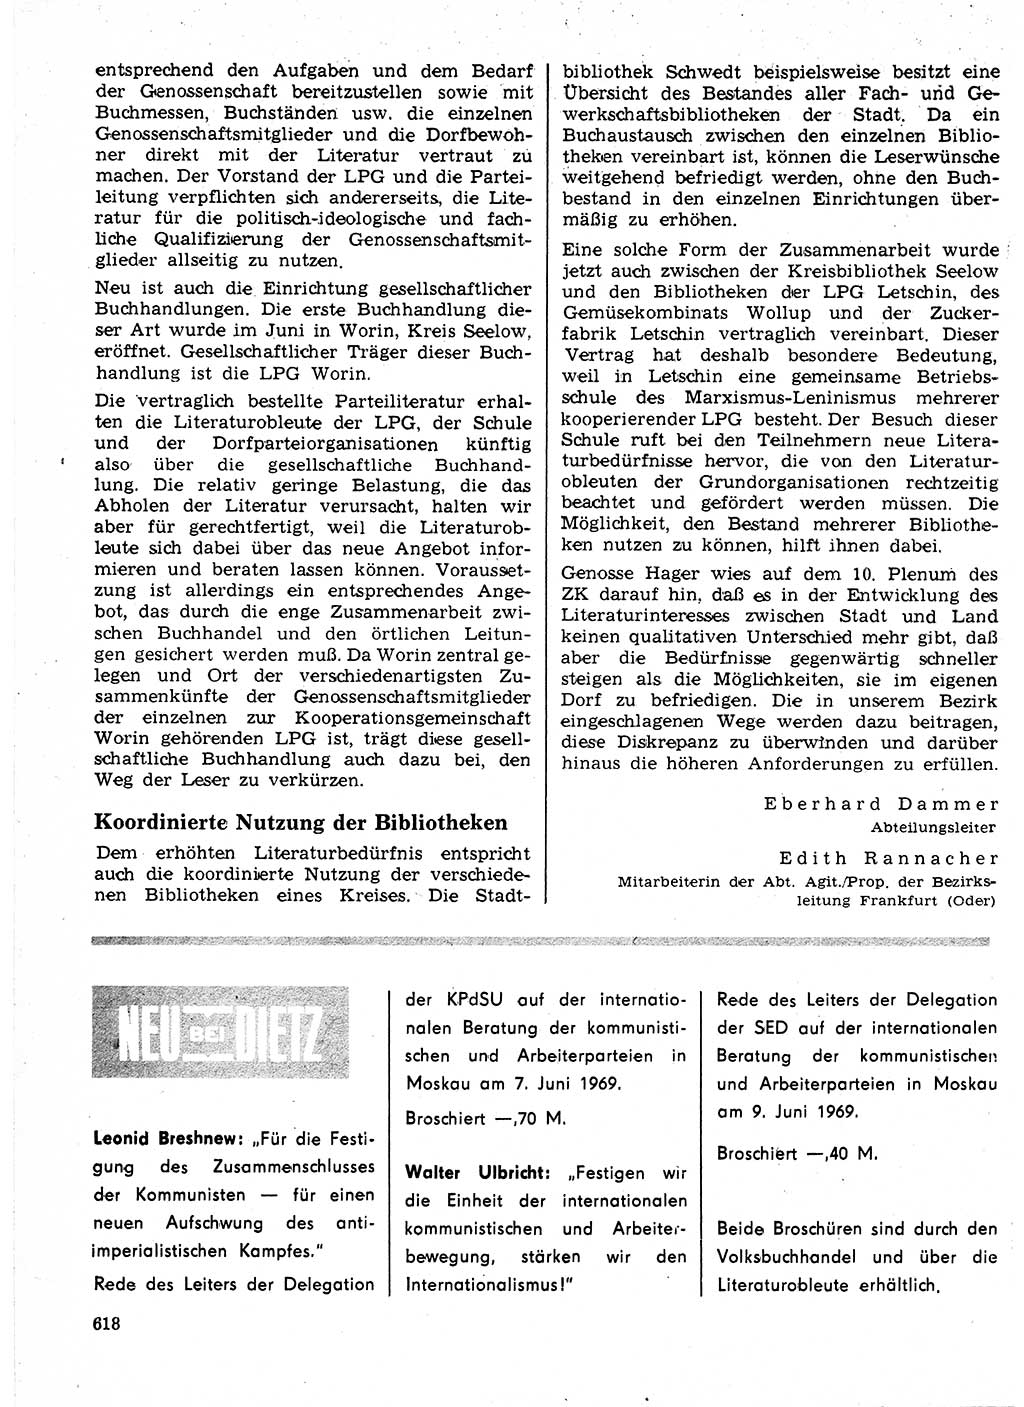 Neuer Weg (NW), Organ des Zentralkomitees (ZK) der SED (Sozialistische Einheitspartei Deutschlands) für Fragen des Parteilebens, 24. Jahrgang [Deutsche Demokratische Republik (DDR)] 1969, Seite 618 (NW ZK SED DDR 1969, S. 618)